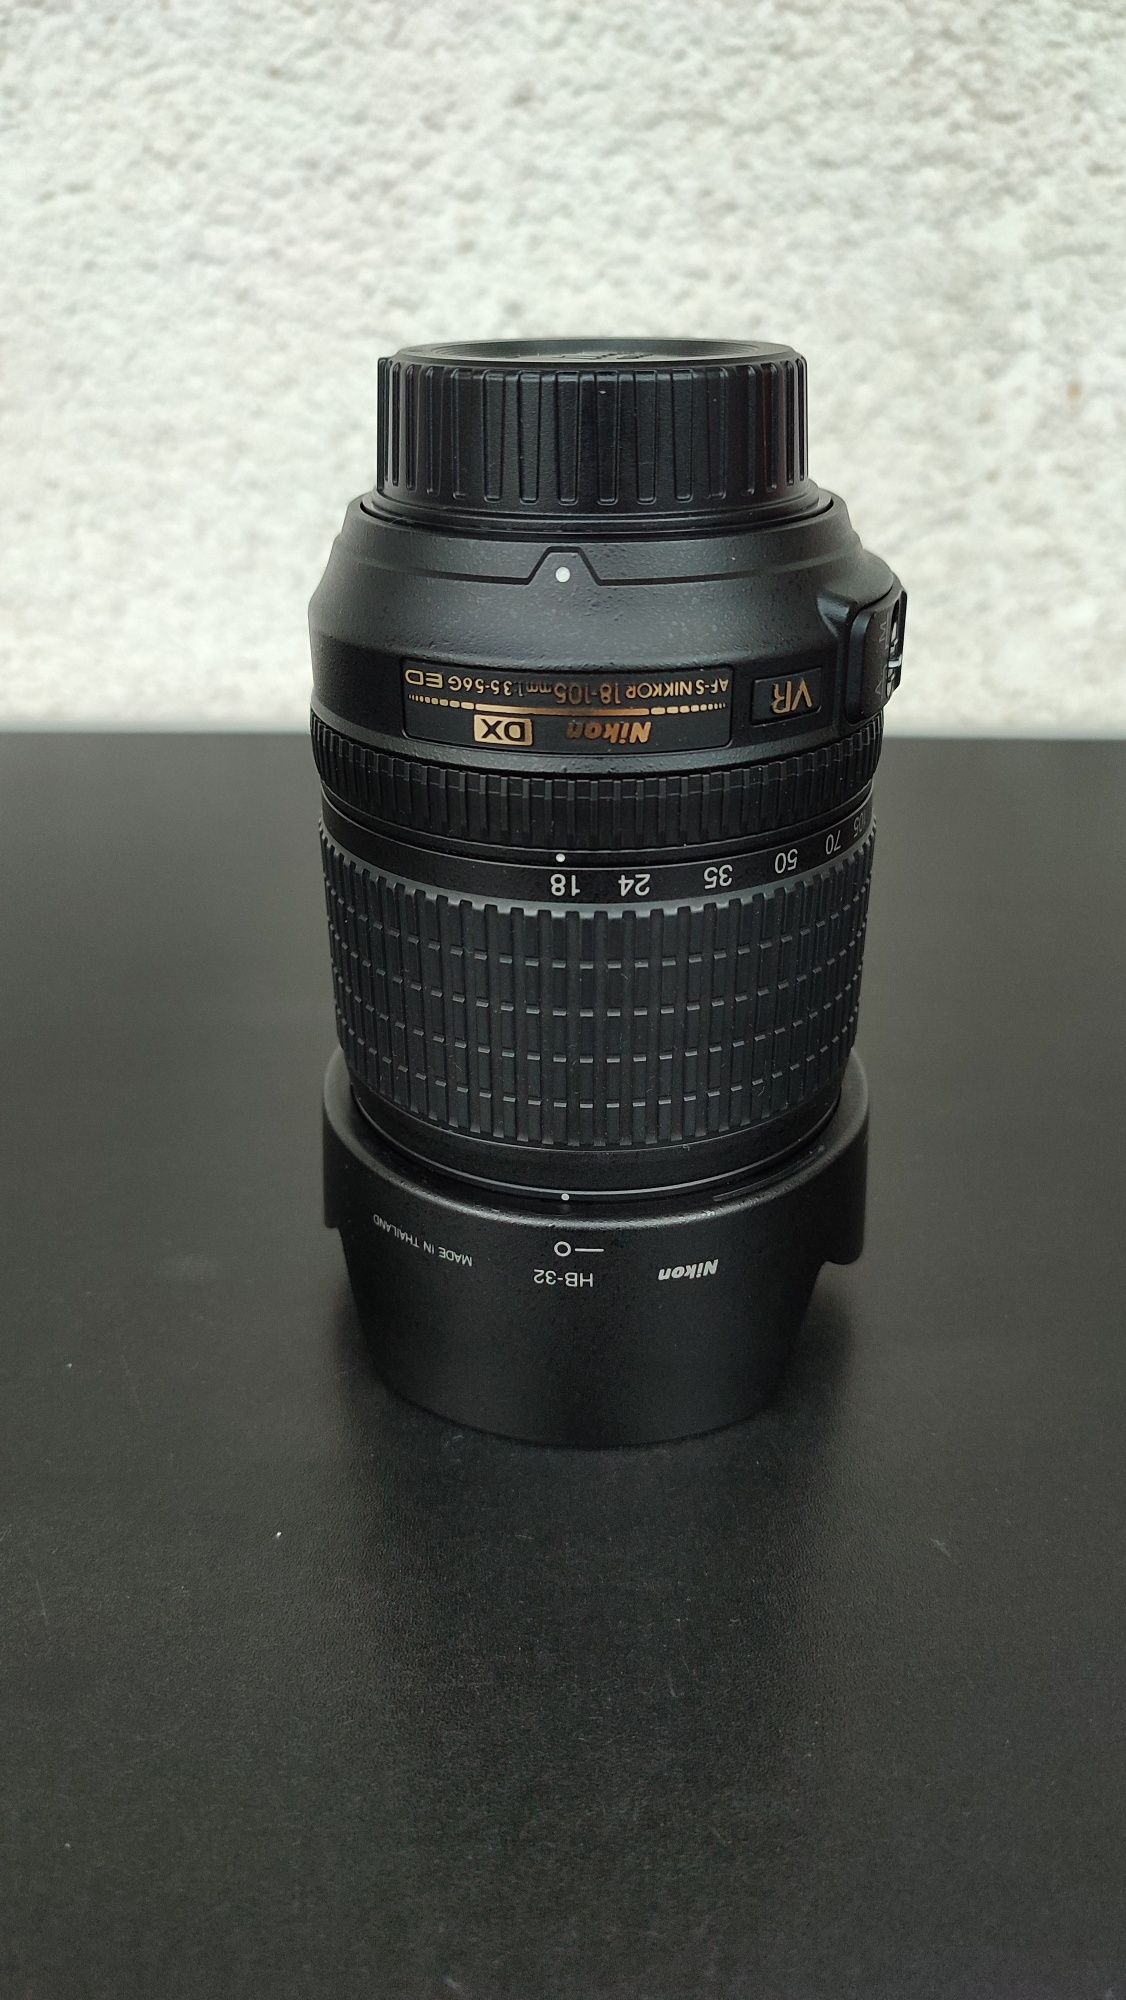 obiectiv foto dslr Nikon AF-S DX Nikkor 18-105mm f/3.5-5.6G ED VR